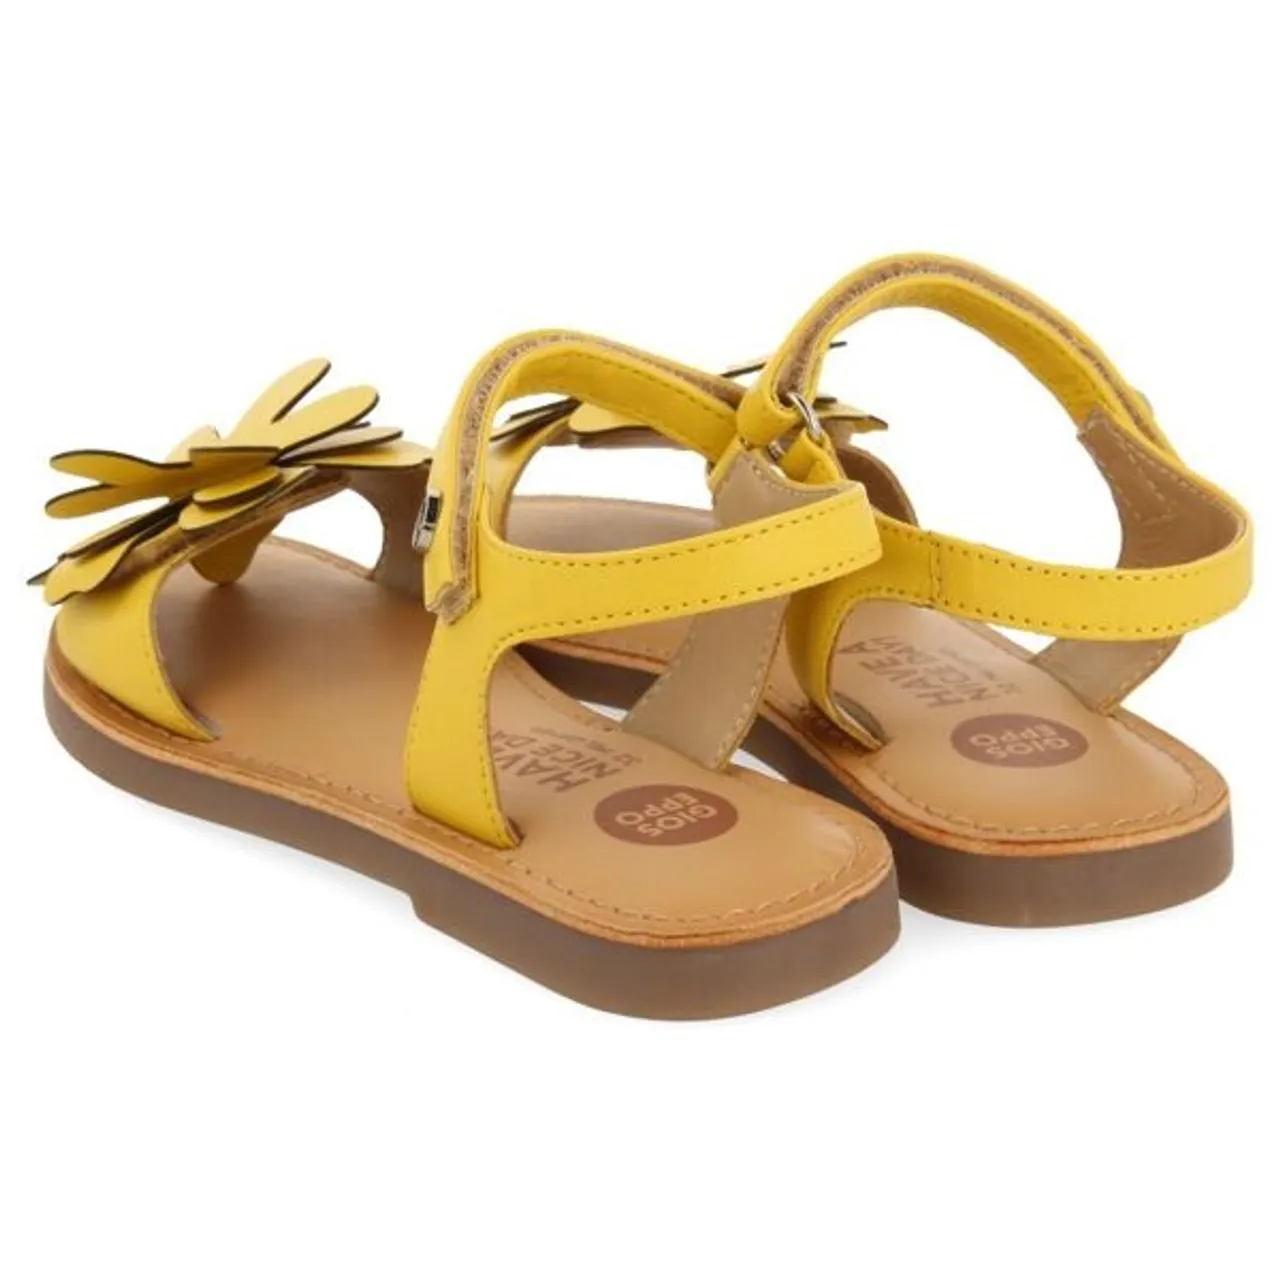 Sandale GIOSEPPO KIDS "Cres" Gr. 38, gelb Kinder Schuhe Mädchenschuhe